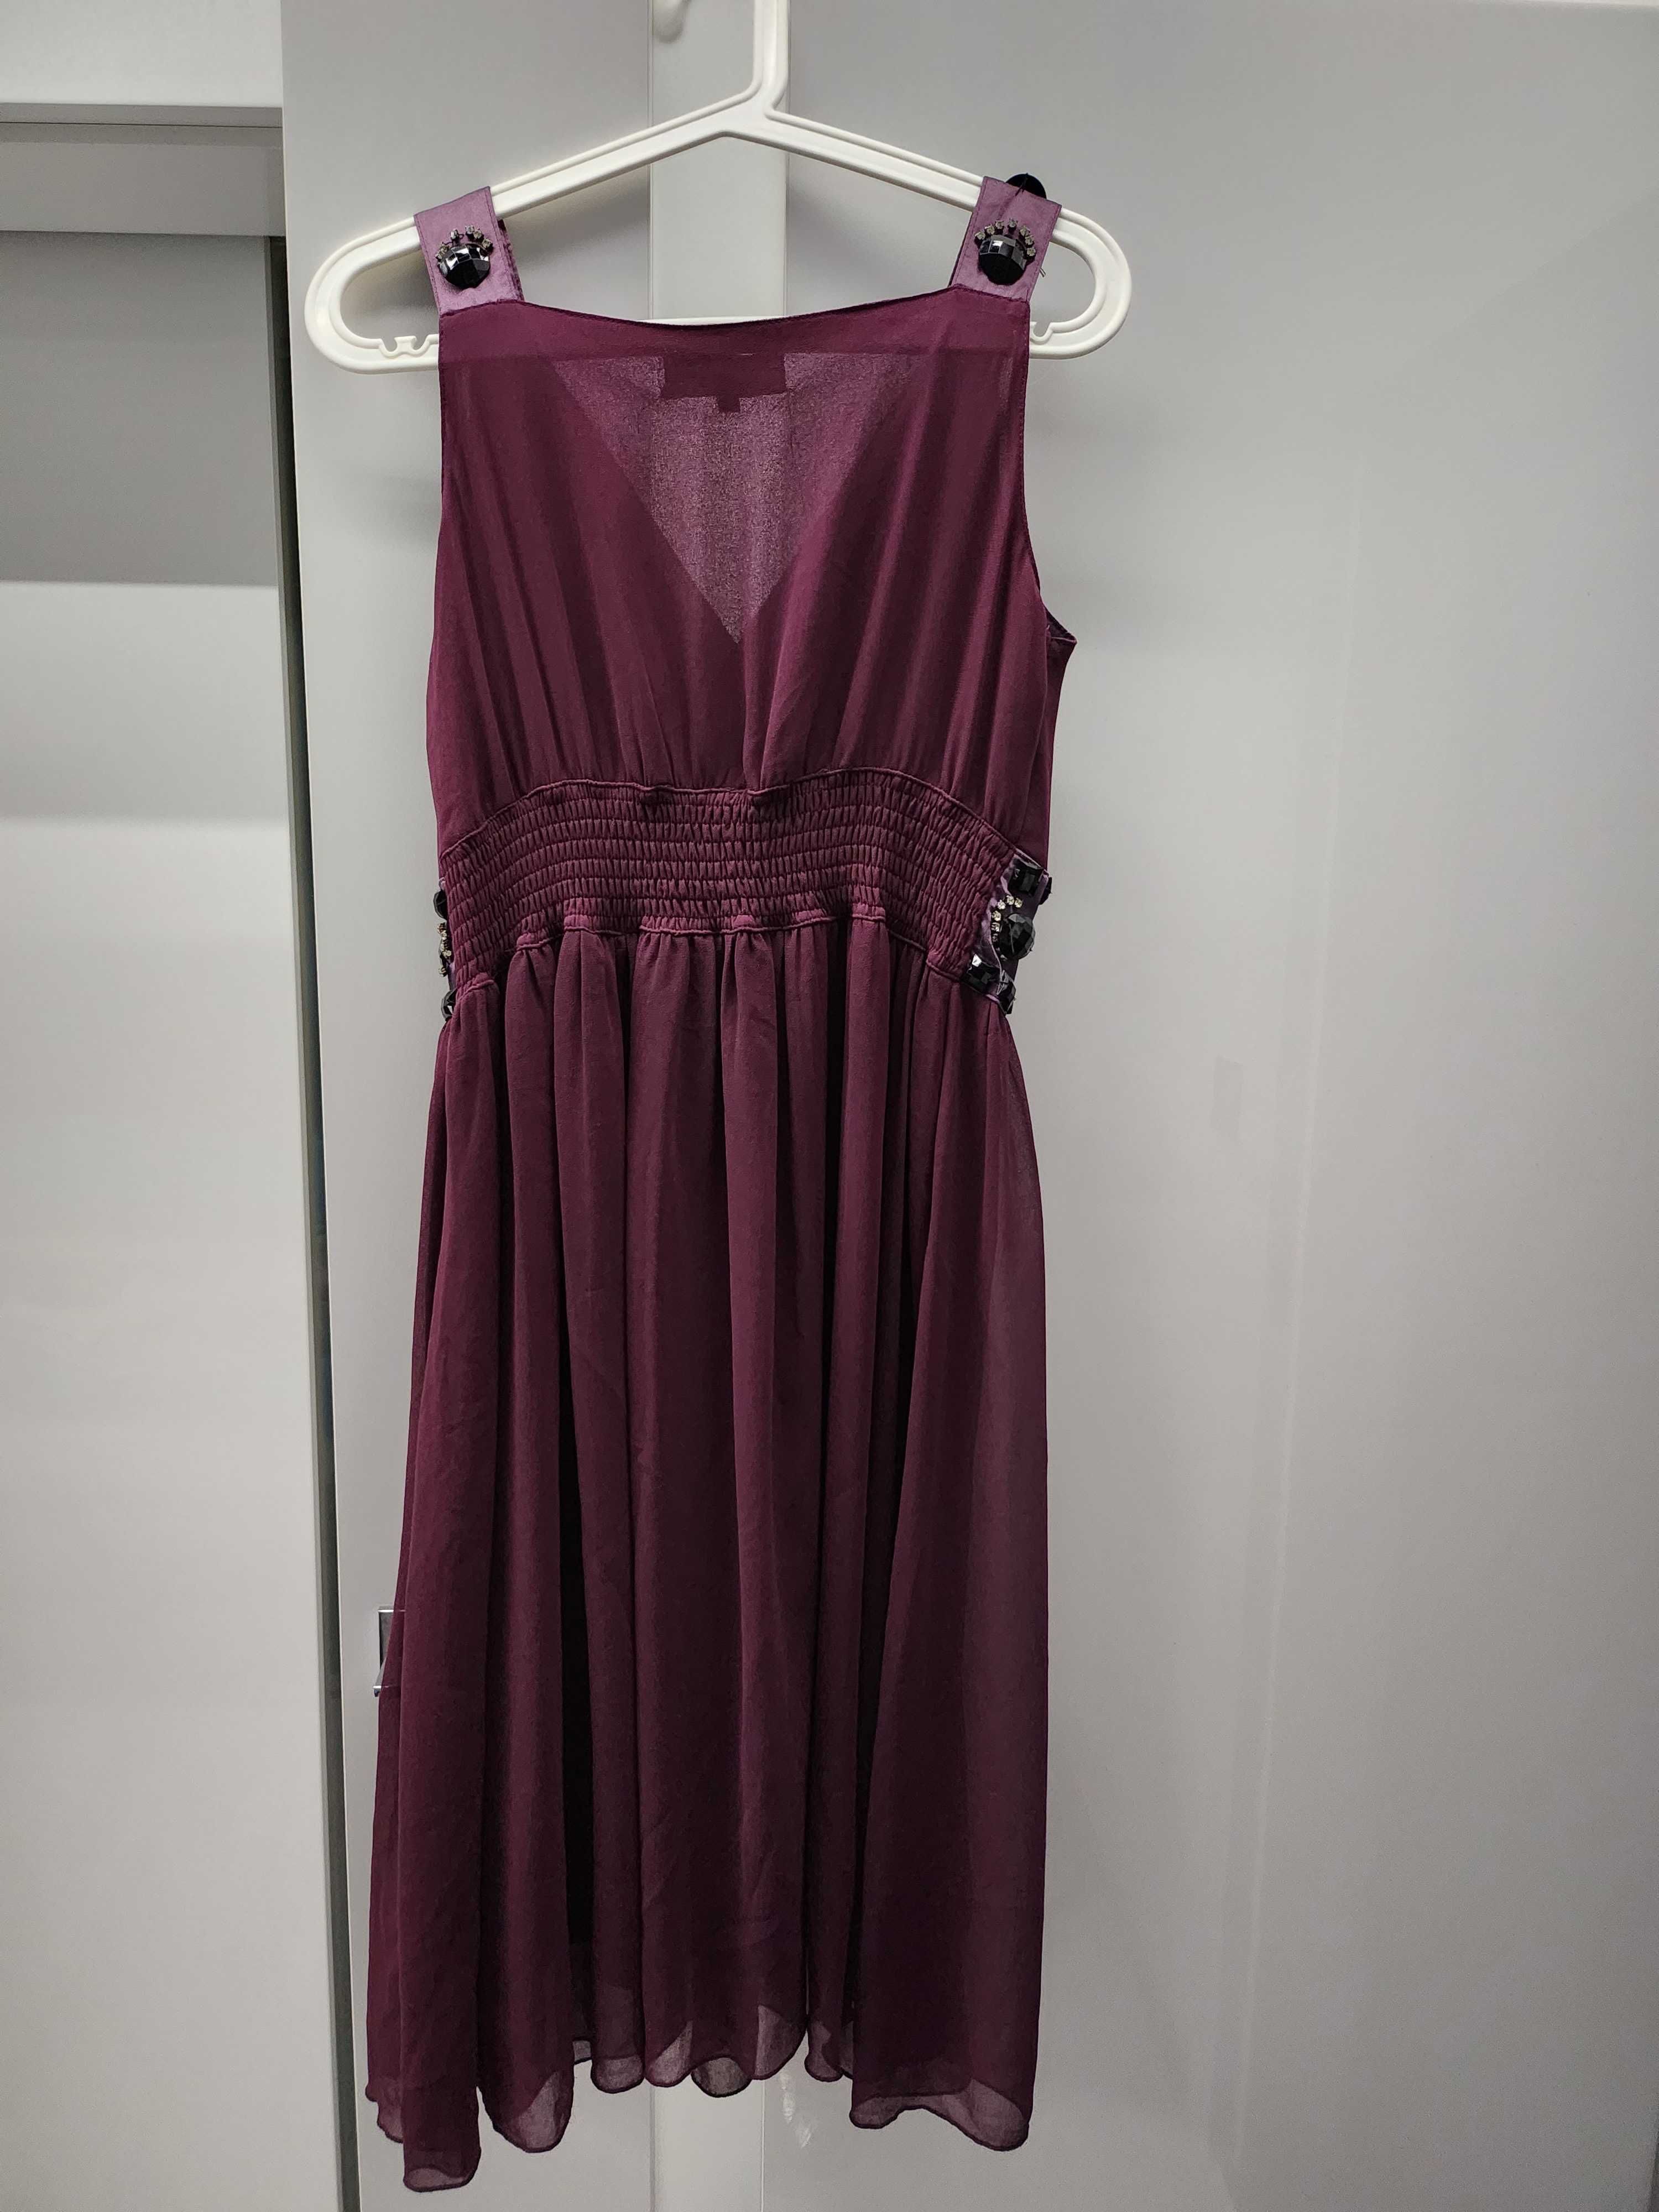 Sukienka szyfonowa koktailowa zdobiona kamieniami fioletowa r. M/L